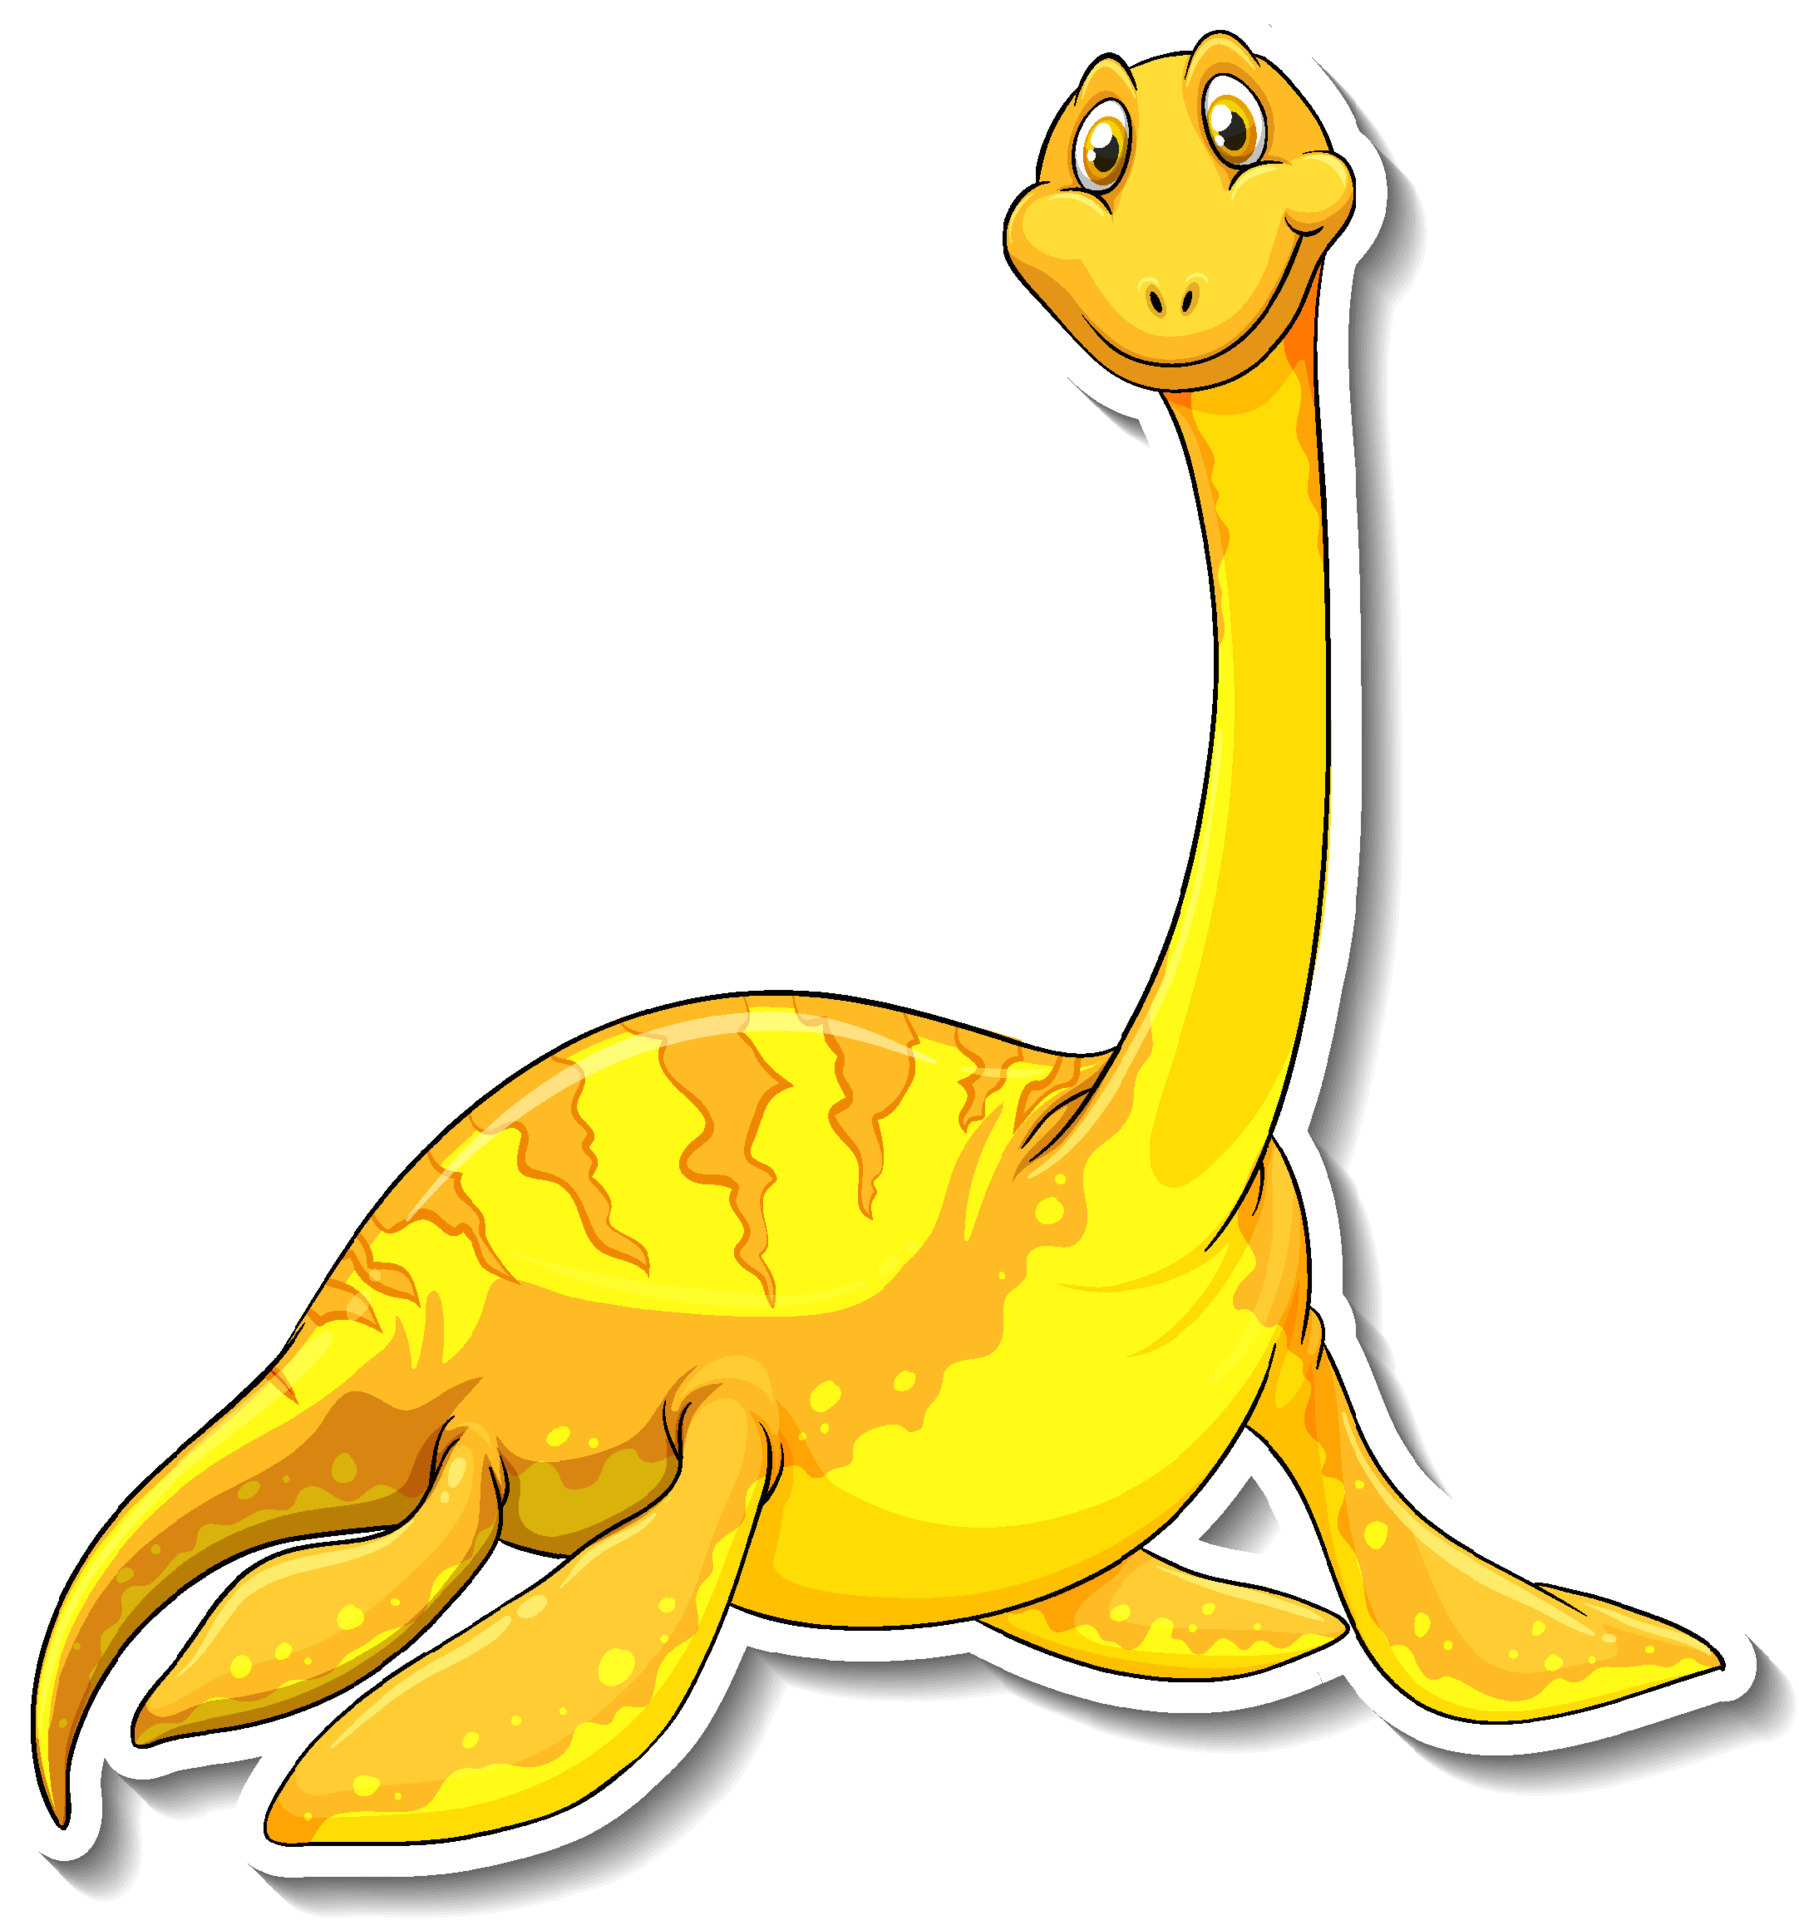 etiqueta engomada del personaje de dibujos animados del dinosaurio  elasmosaurus 4342690 Vector en Vecteezy